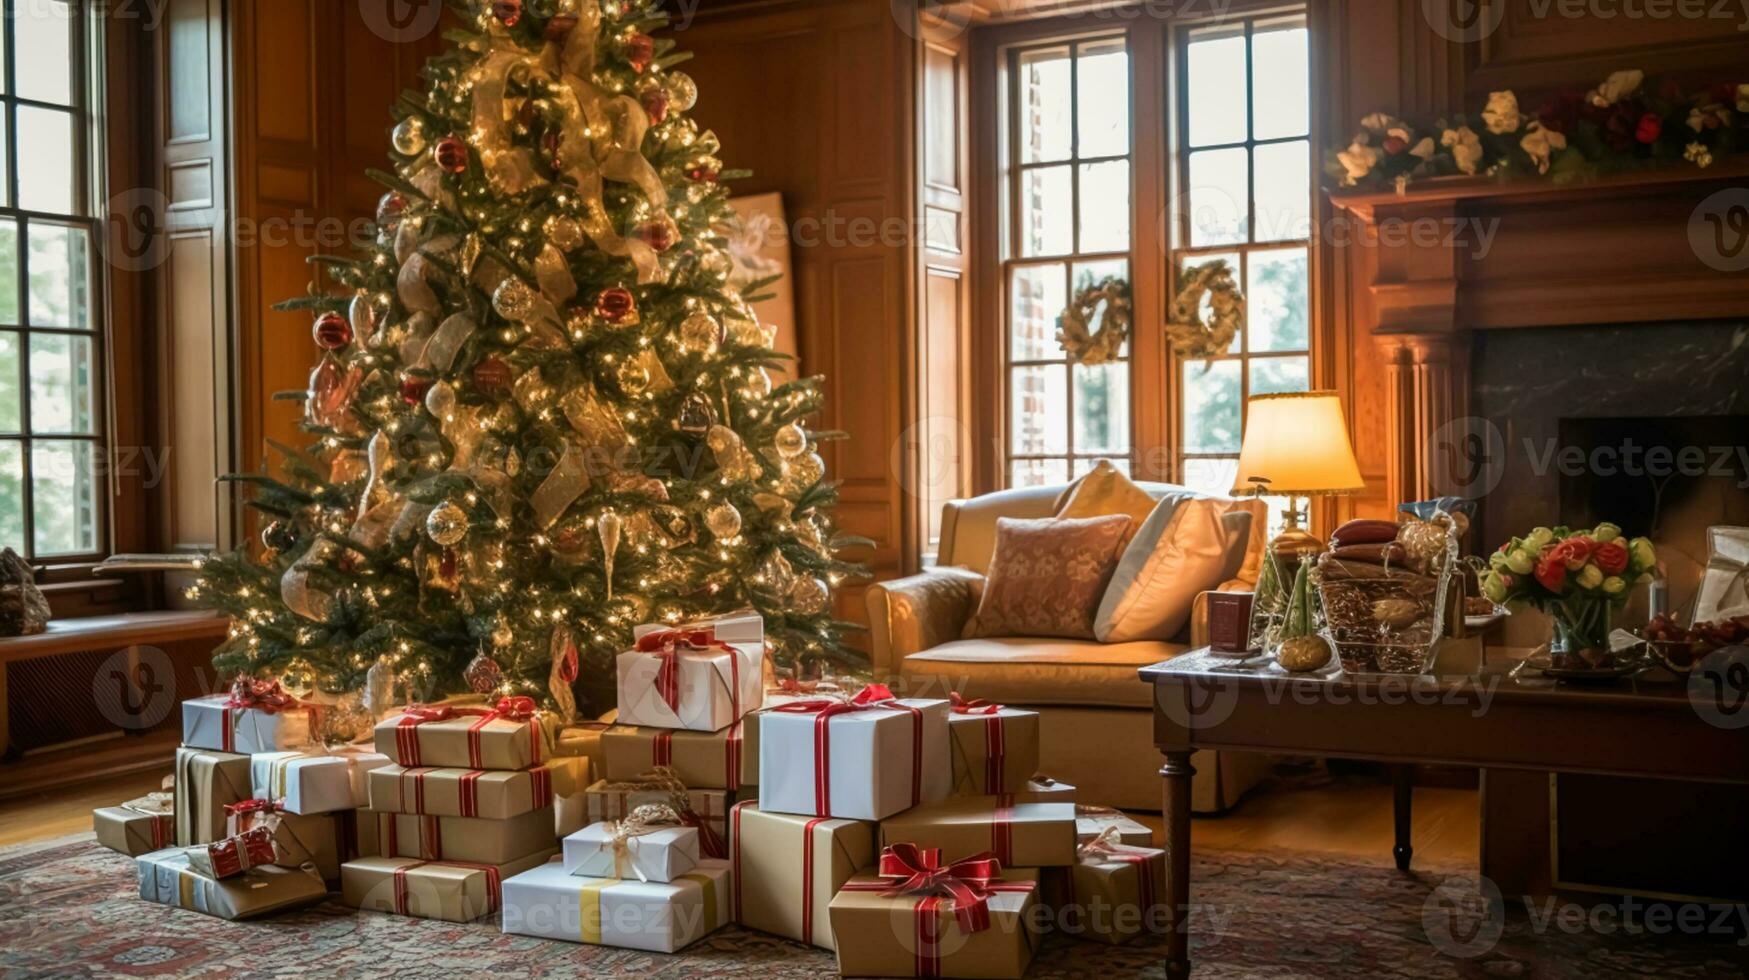 Natale i regali, contento vacanze e vacanza celebrazione, avvolto regalo scatole, regali e decorato Natale albero, generativo ai foto